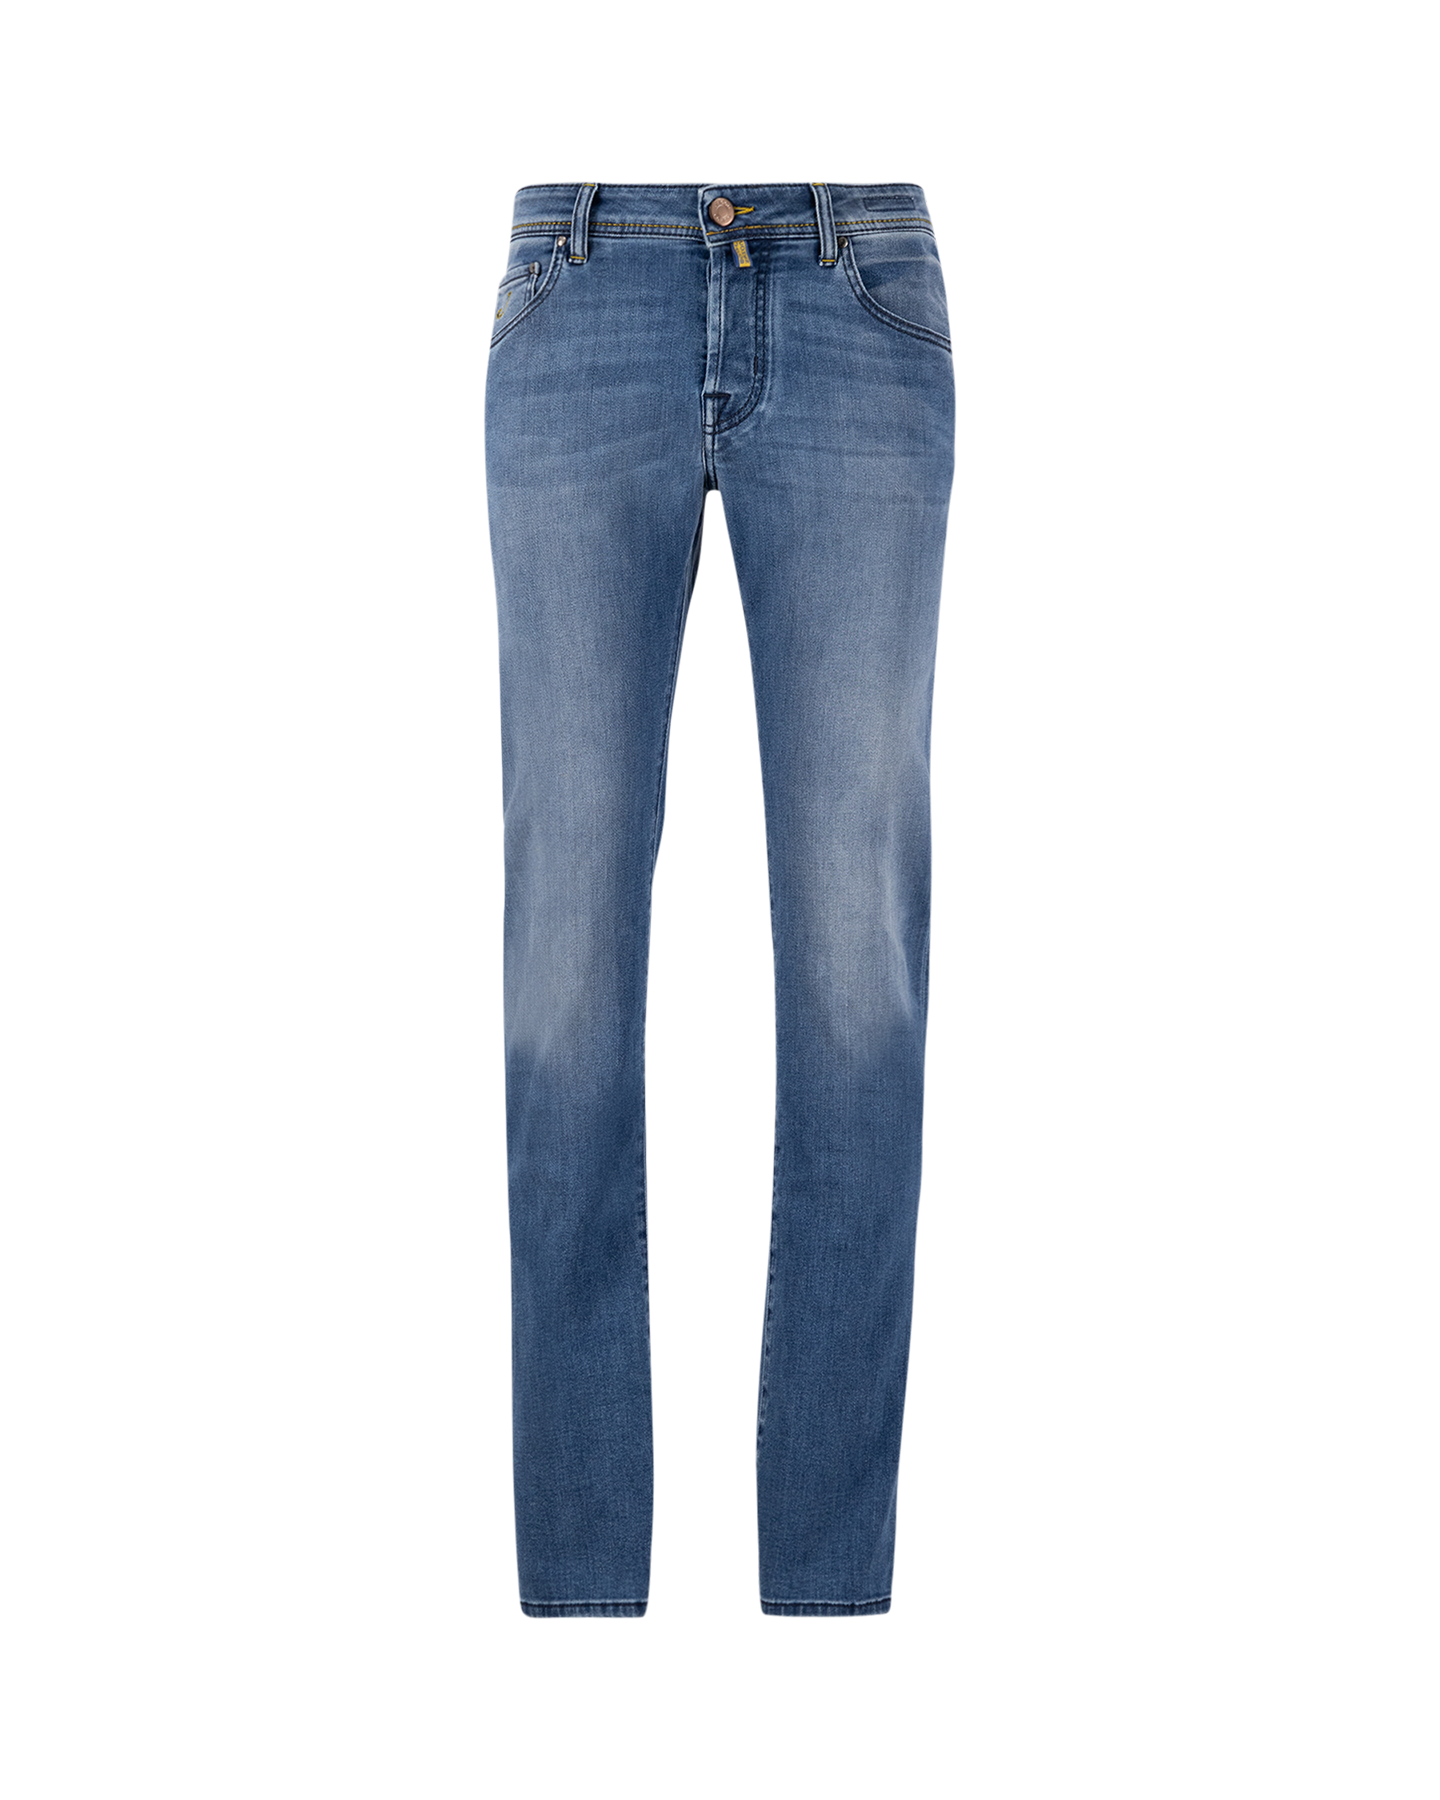 Jacob Cohen Nick Slim Mid-Light Blue Jeans 698D DENIM 1